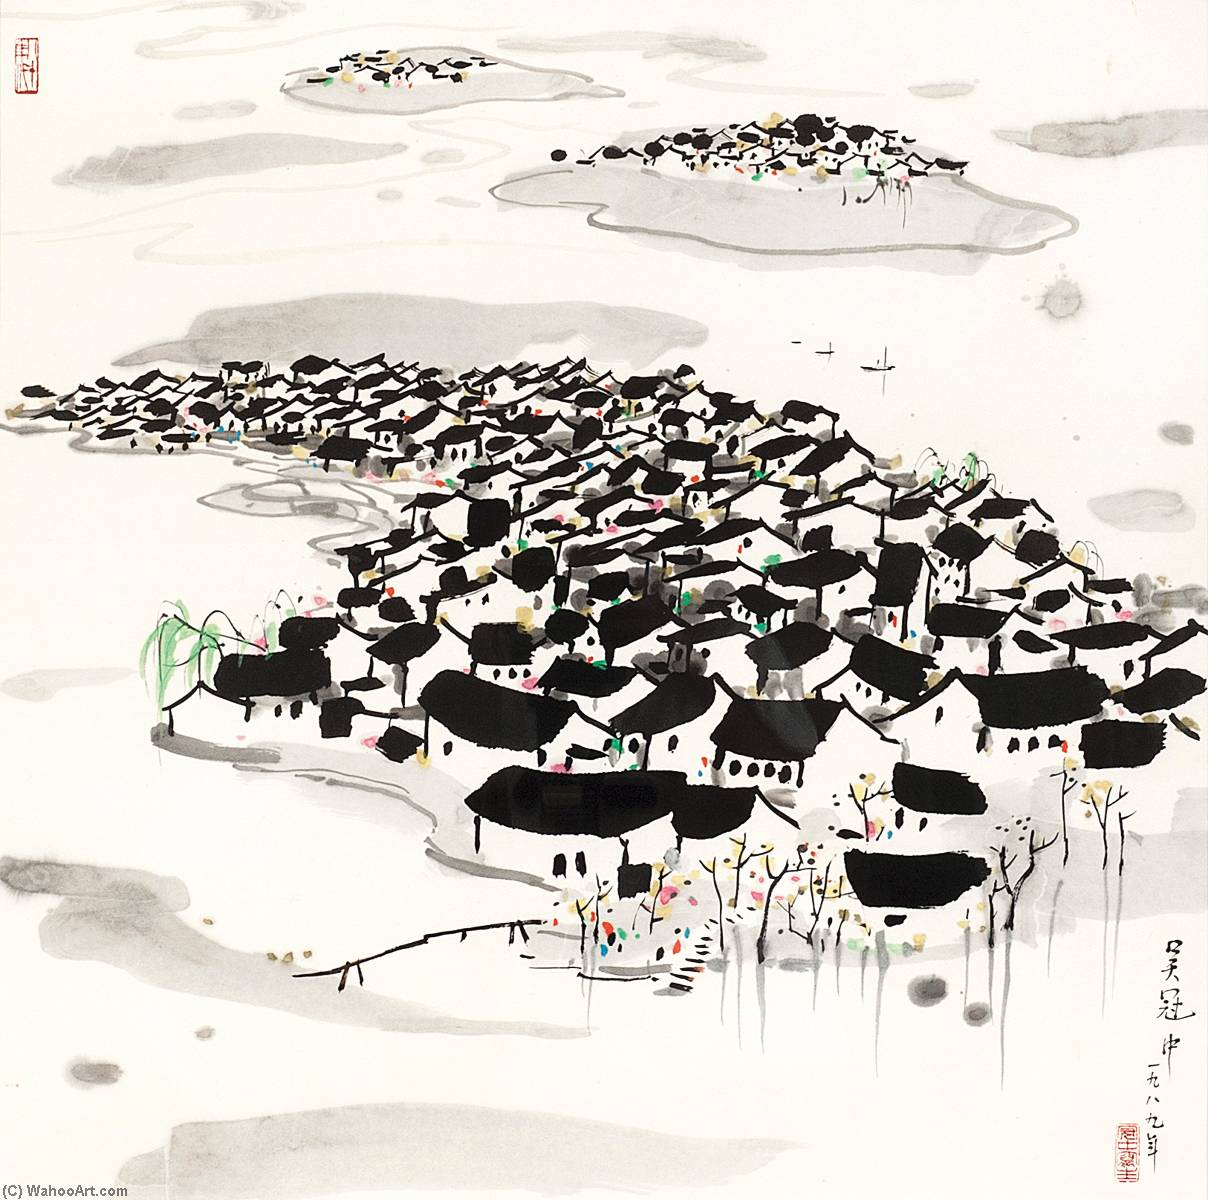 WikiOO.org - Encyclopedia of Fine Arts - Lukisan, Artwork Wu Guanzhong - RIVER TOWN